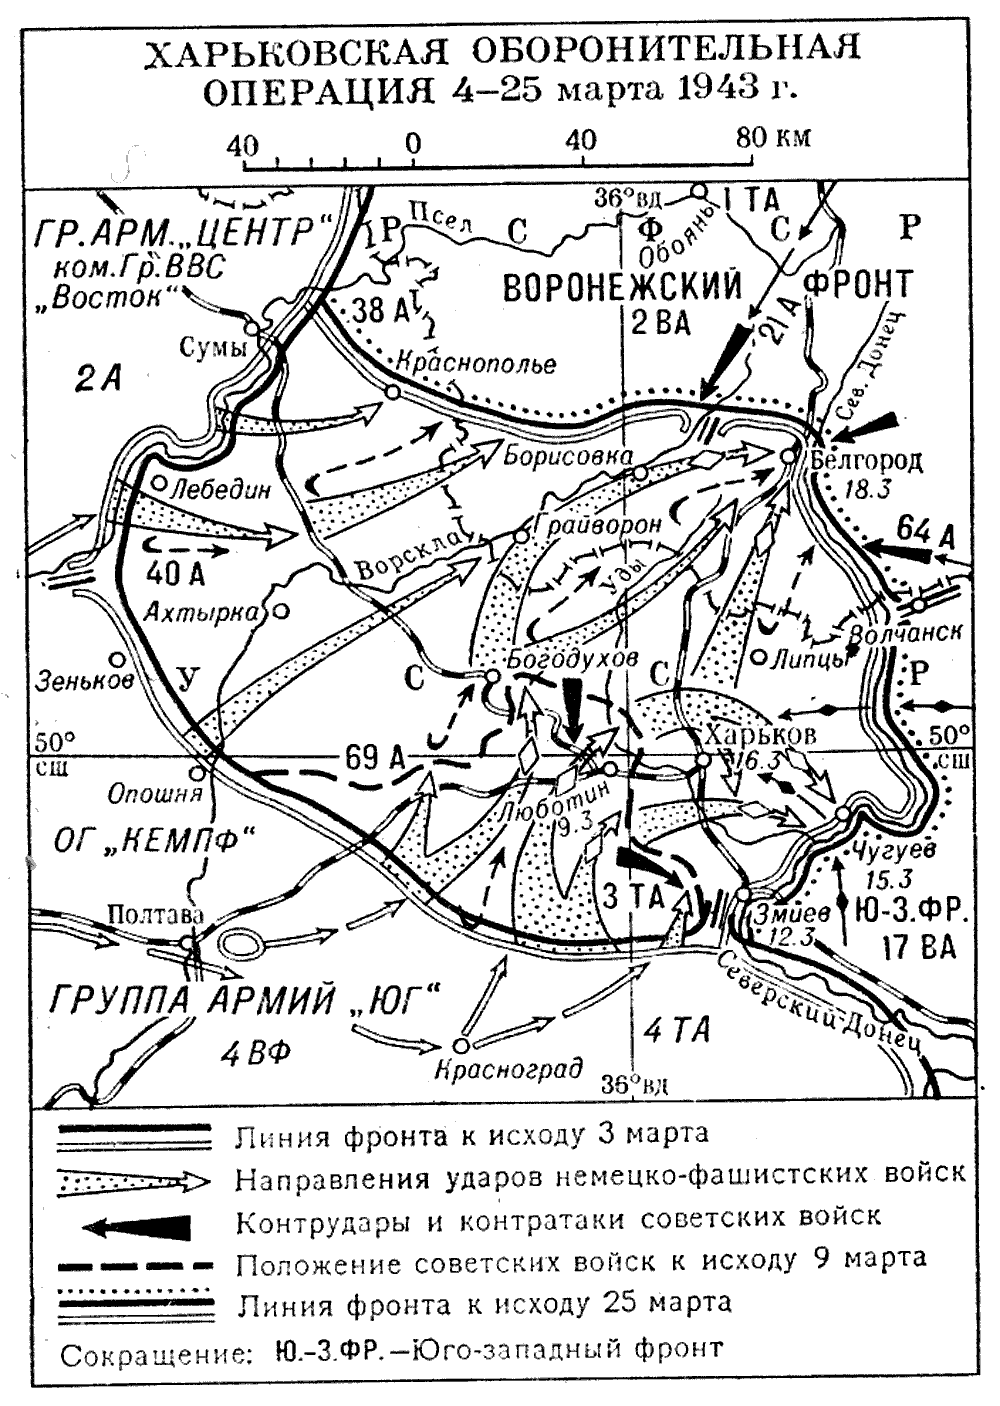 Наступление на харьков со стороны белгорода. Харьковская наступательная операция 1943 года.